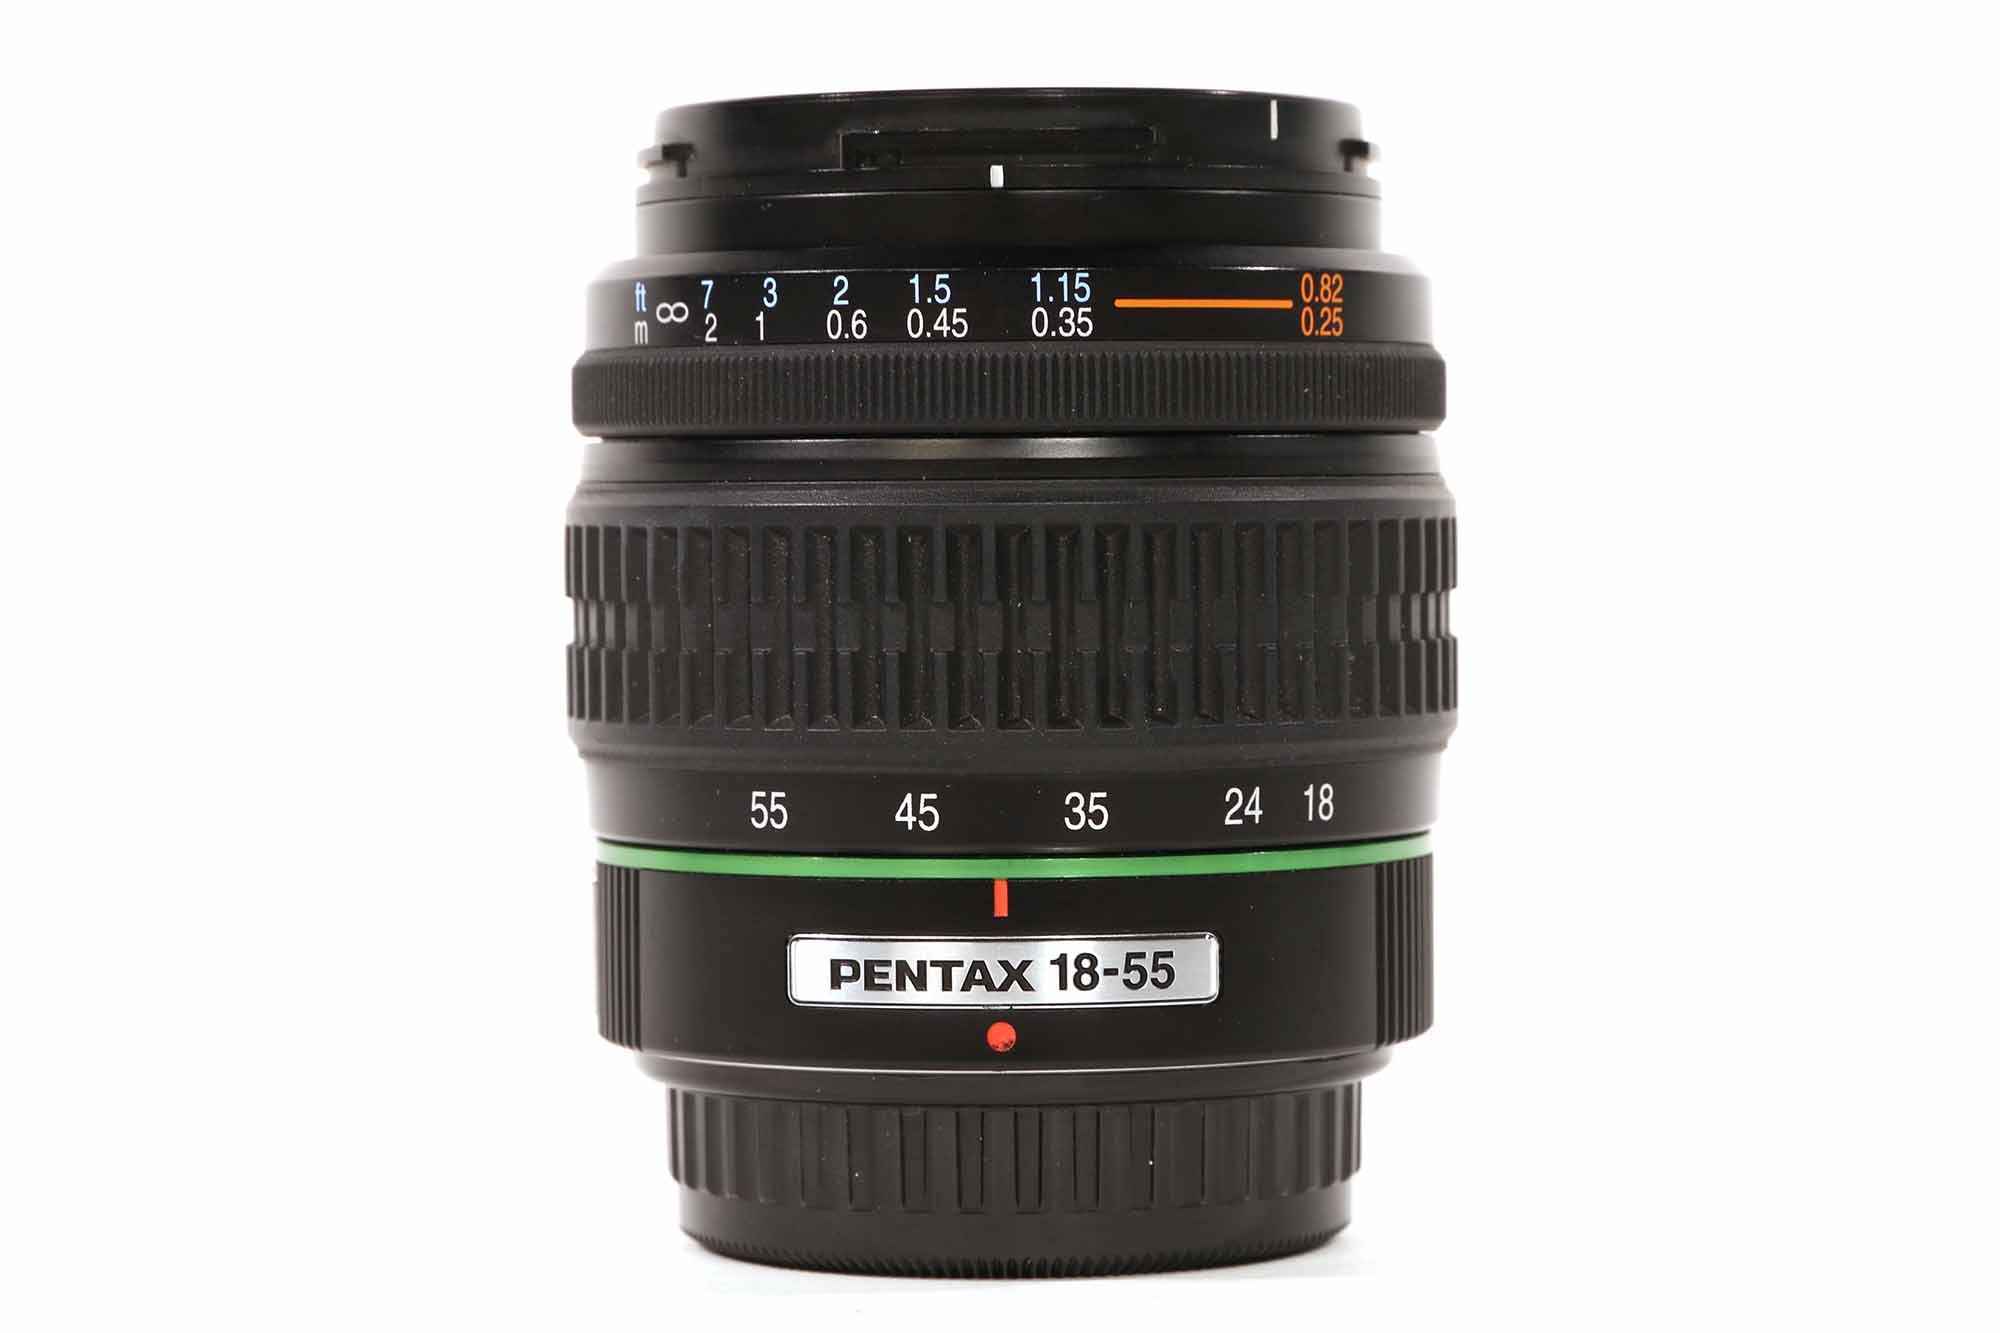 Pentax 18-55mm 3.5-5.6 gebraucht Bild 01